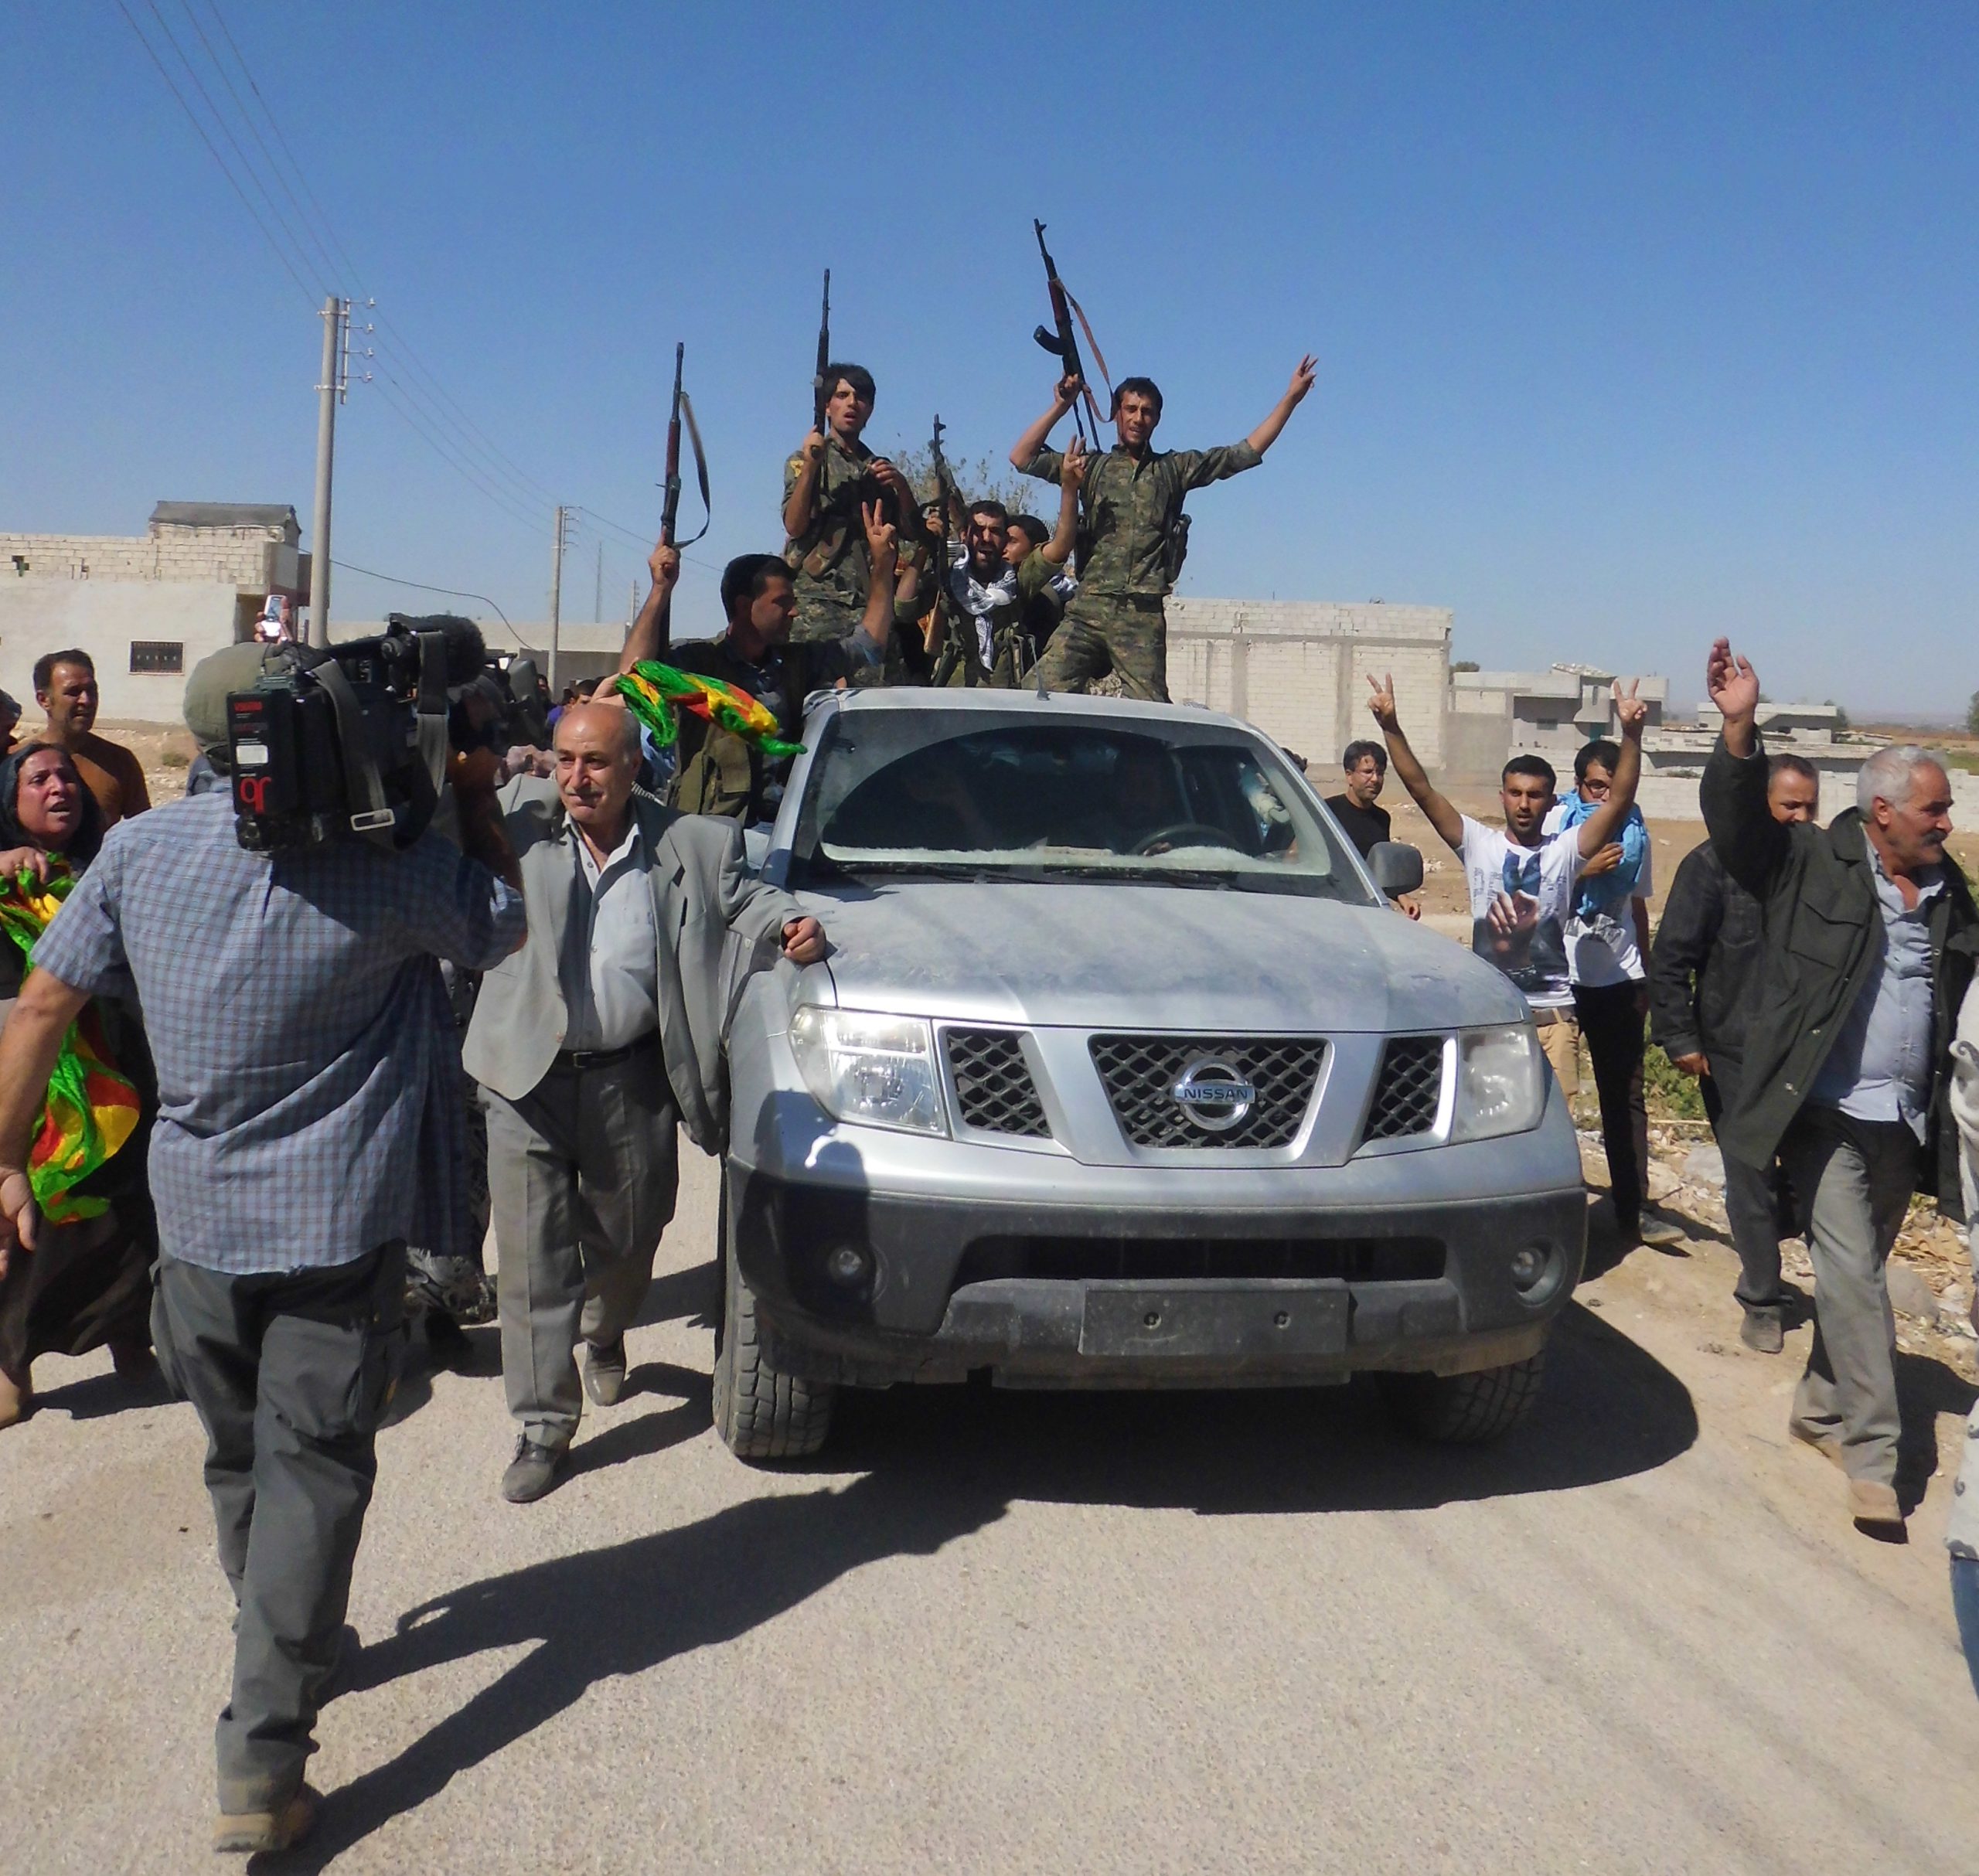 En el corazón de la ciudad. El viernes 26 de septiembre unas mil personas, pertenecientes a movimientos prokurdos, socialistas, comunistas e incluso kemalistas, habían conseguido llegar desde Turquía al enclave kurdo en el norte de Siria después de tumbar por la fuerza el tendido del alambre de espino de la frontera. Deseaban mostrar su solidaridad con los sitiados, algo que despertó unas pocas horas de alegría. En la foto, miembros de las milicias kurdas de la Unidad de Protección del Pueblo (YPG) hacen la señal de la victoria y disparan al aire como gesto de celebración en el centro de Kobane. Ese 26 de septiembre fue un día inusual allí: la ciudad sitiada pudo darse un respiro del acoso al que le tiene sometido el Estado Islámico desde hace semanas. Foto y texto: Ricardo Ginés